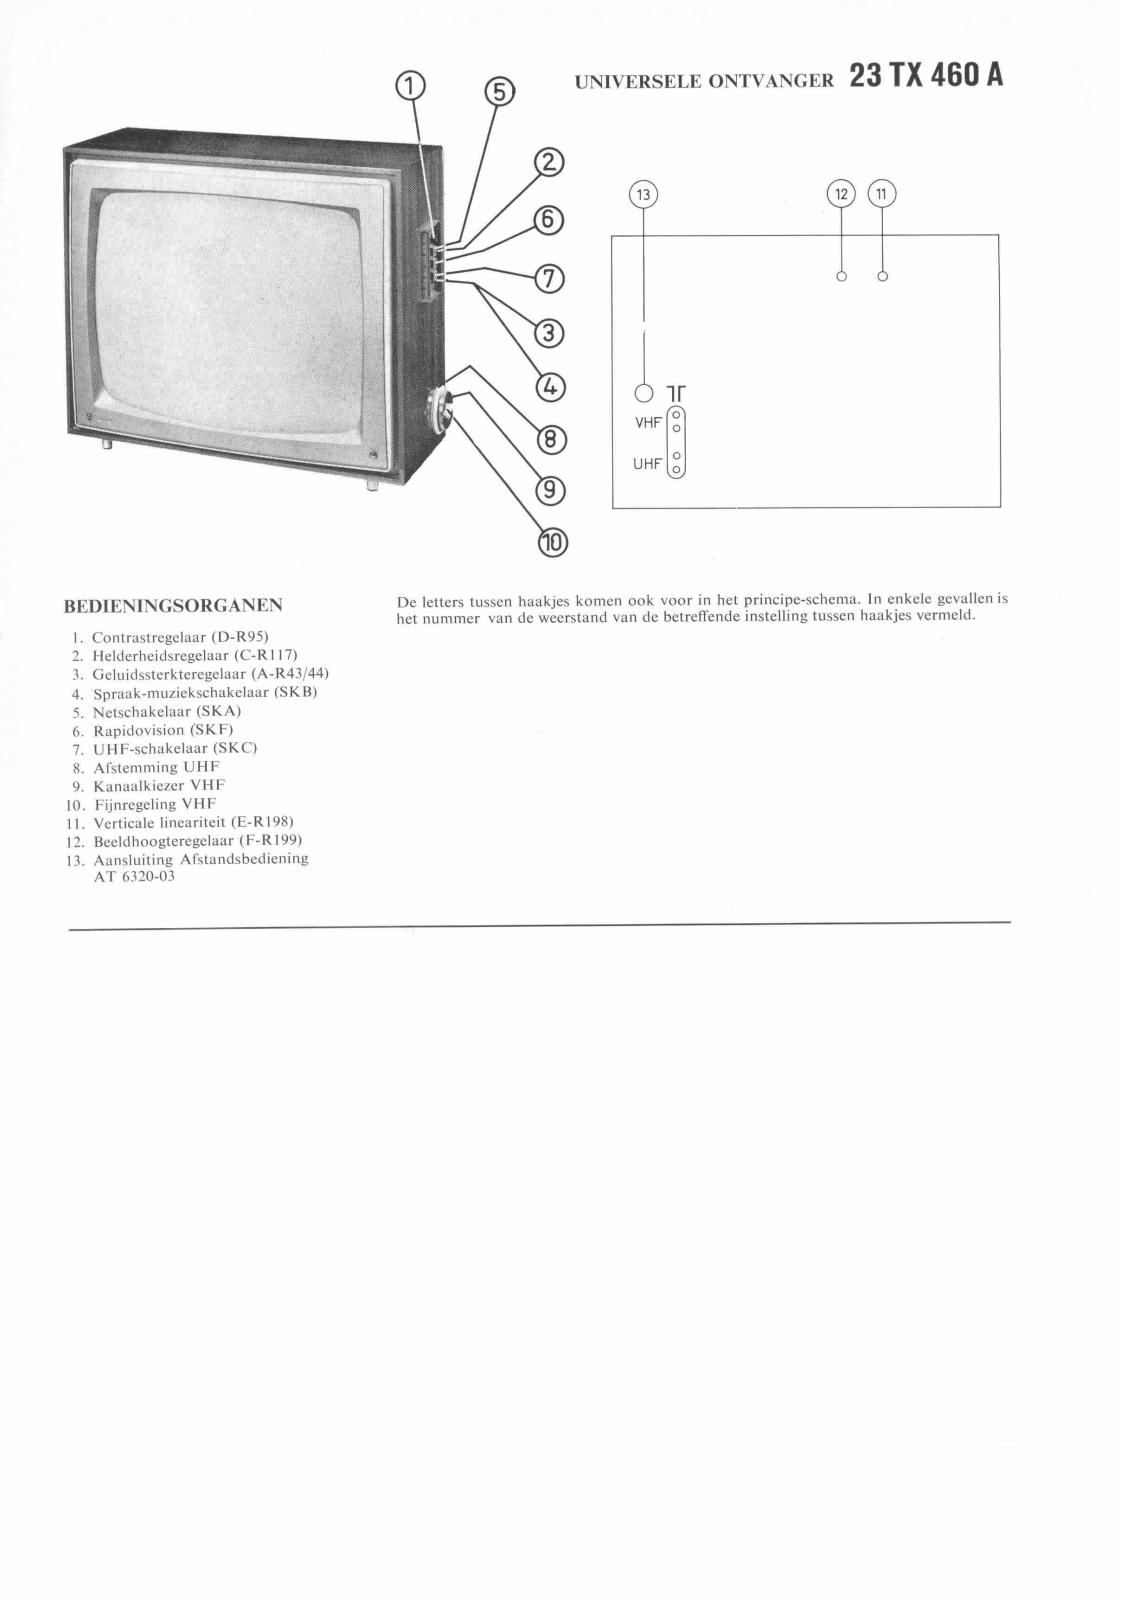 Philips 23TX460A Schematic